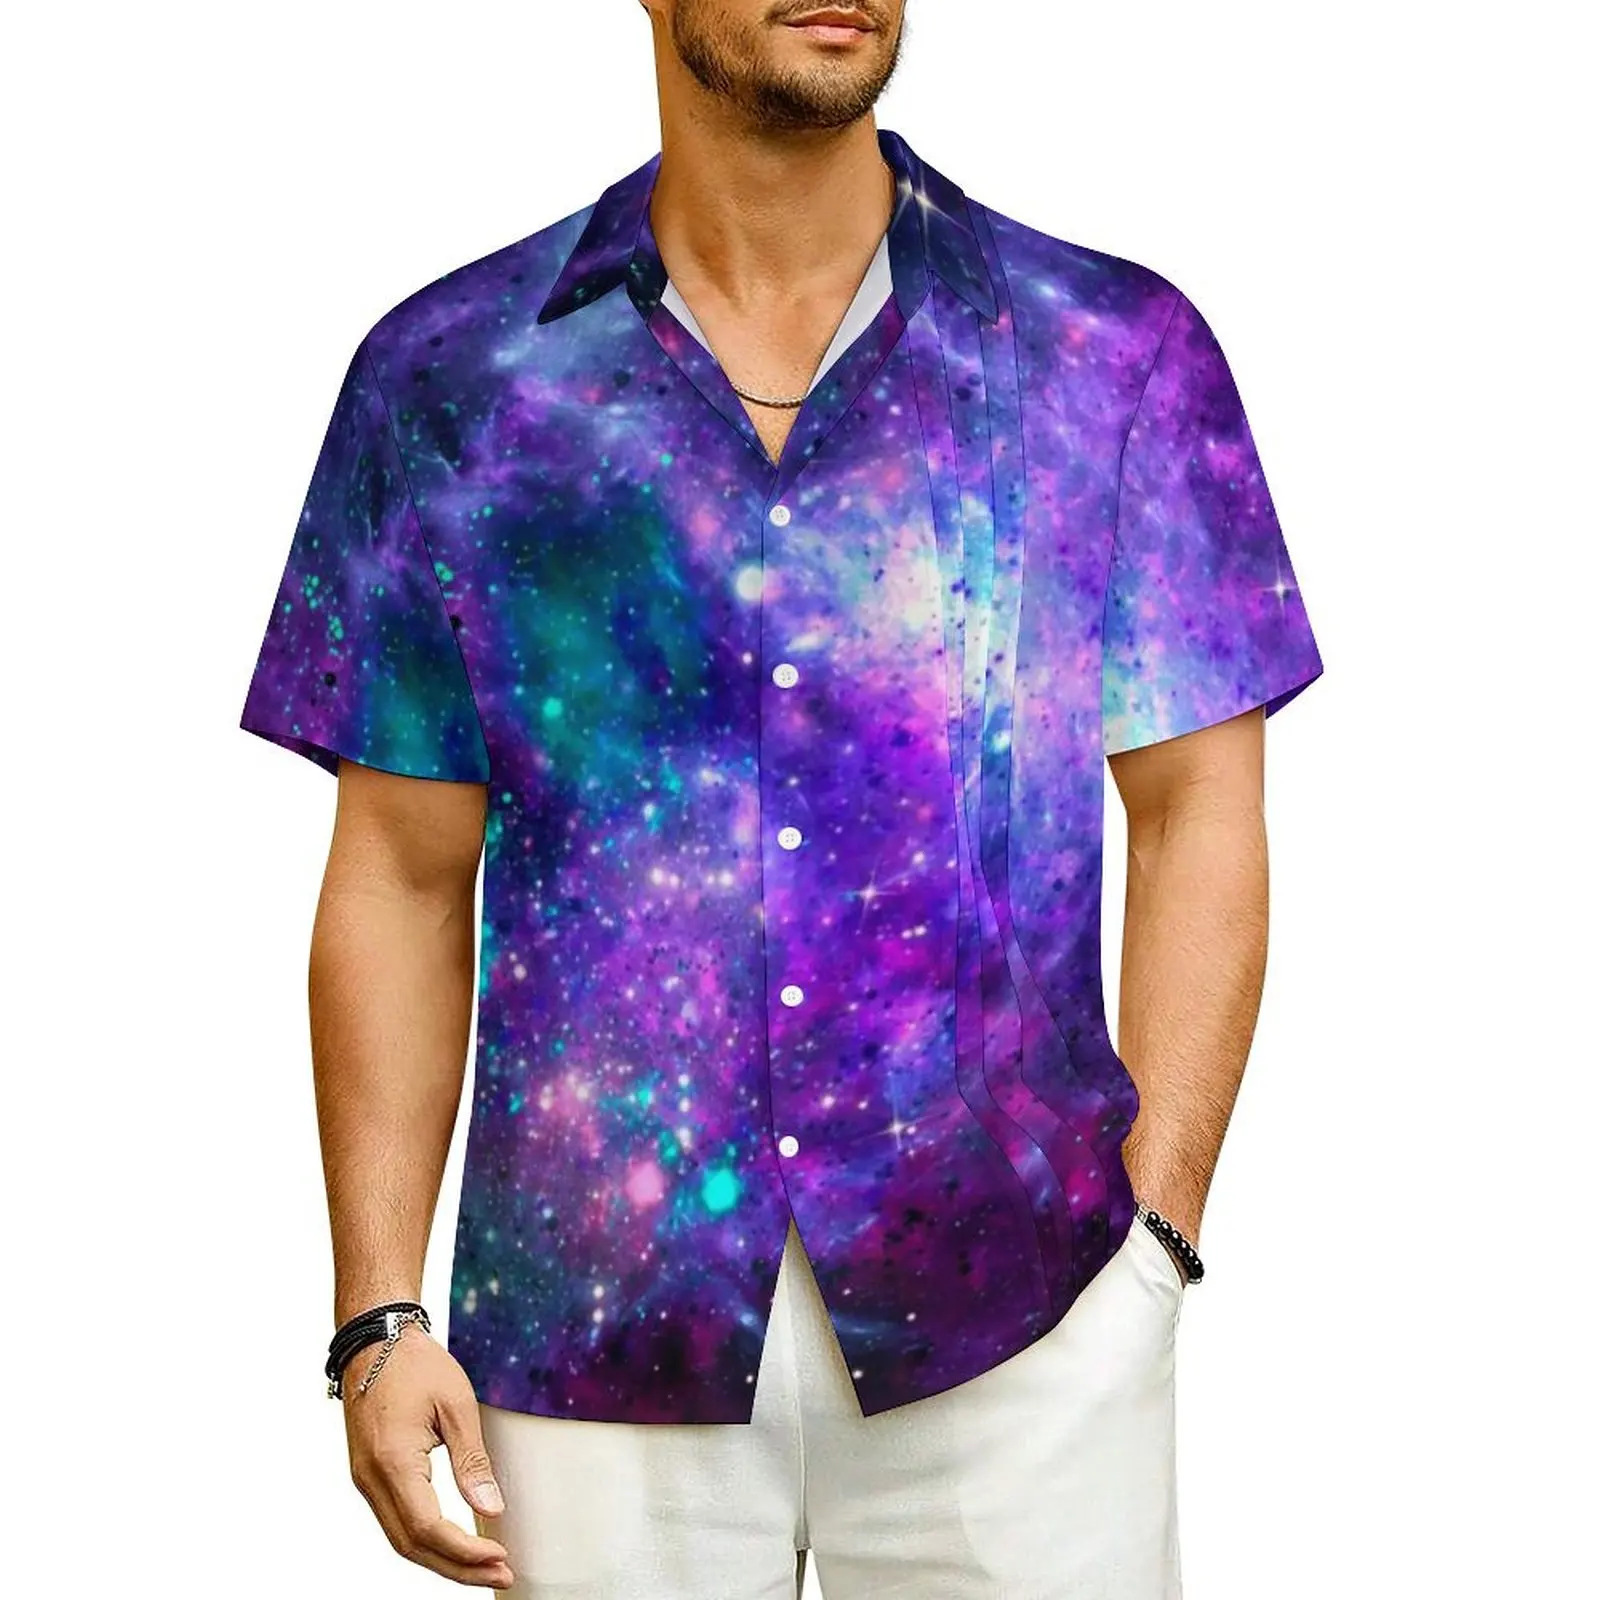 

Рубашка мужская оверсайз с коротким рукавом, стильная Элегантная сорочка небесно-фиолетового цвета, в стиле Фэнтези галактики и космоса, повседневная одежда для отпуска, лето